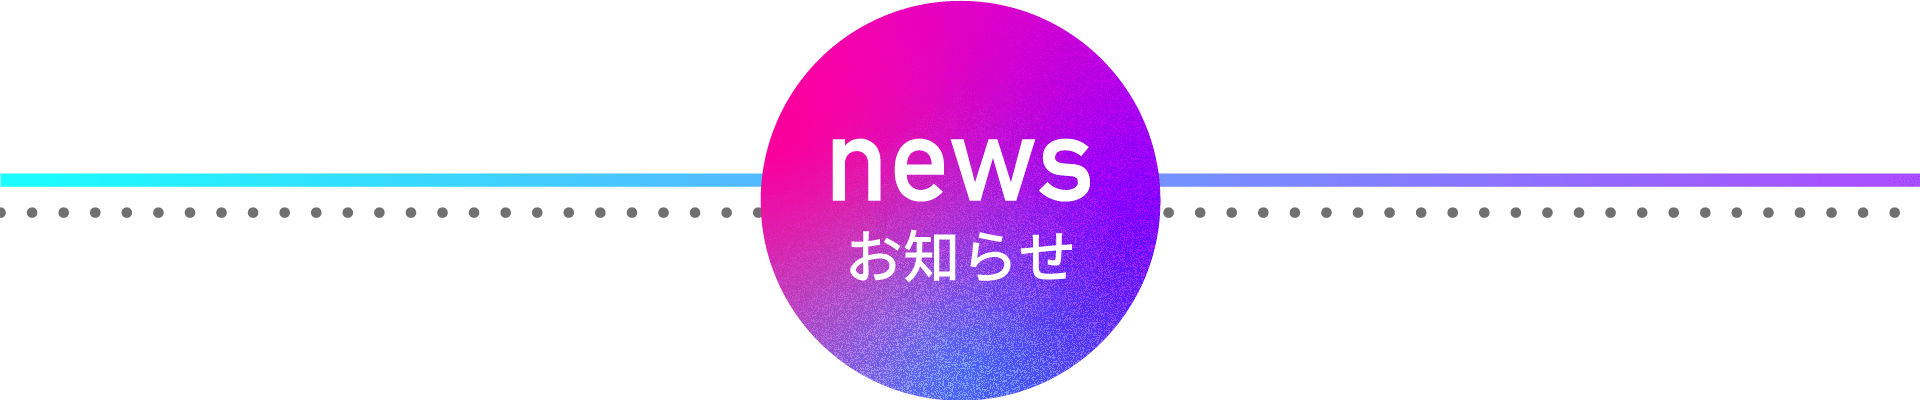 20_mobile_news1